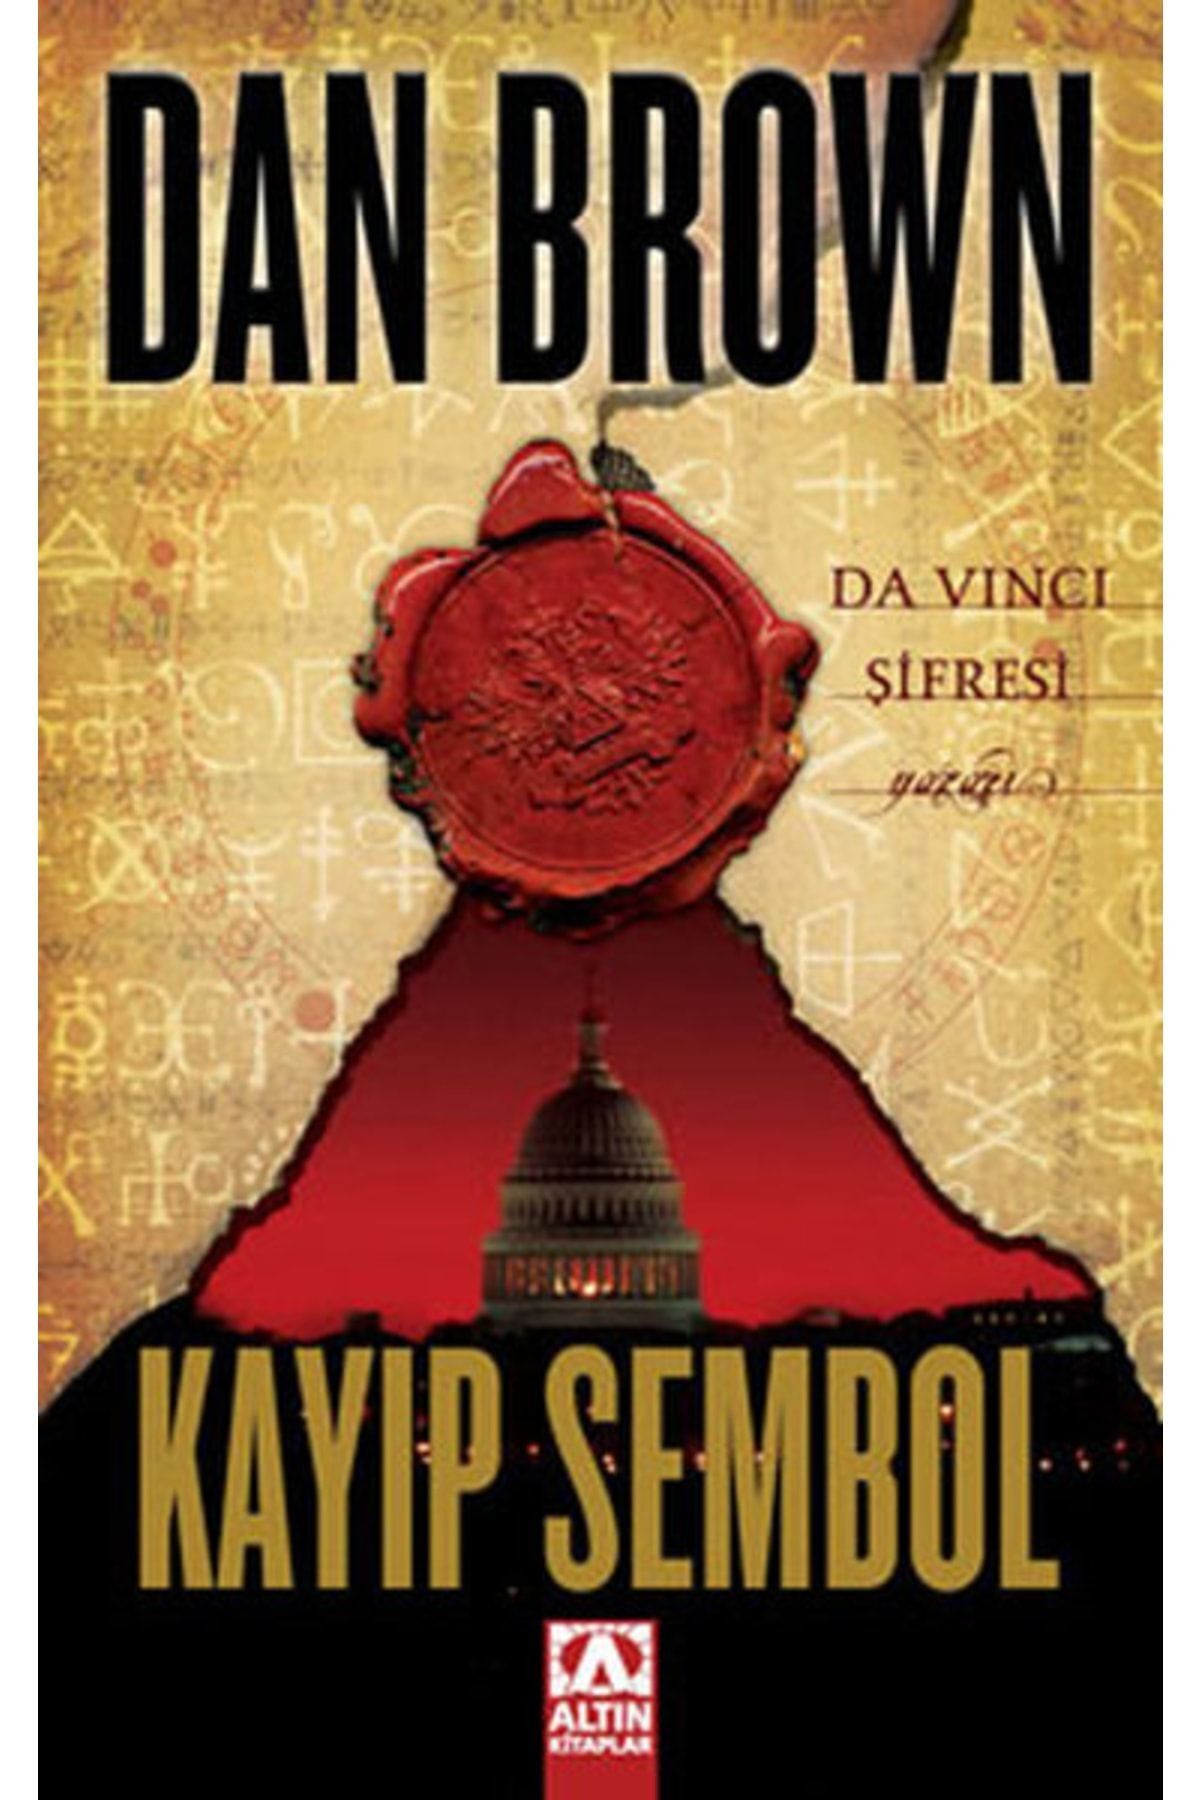 Altın Kitaplar Kayıp Sembol - Dan Brown